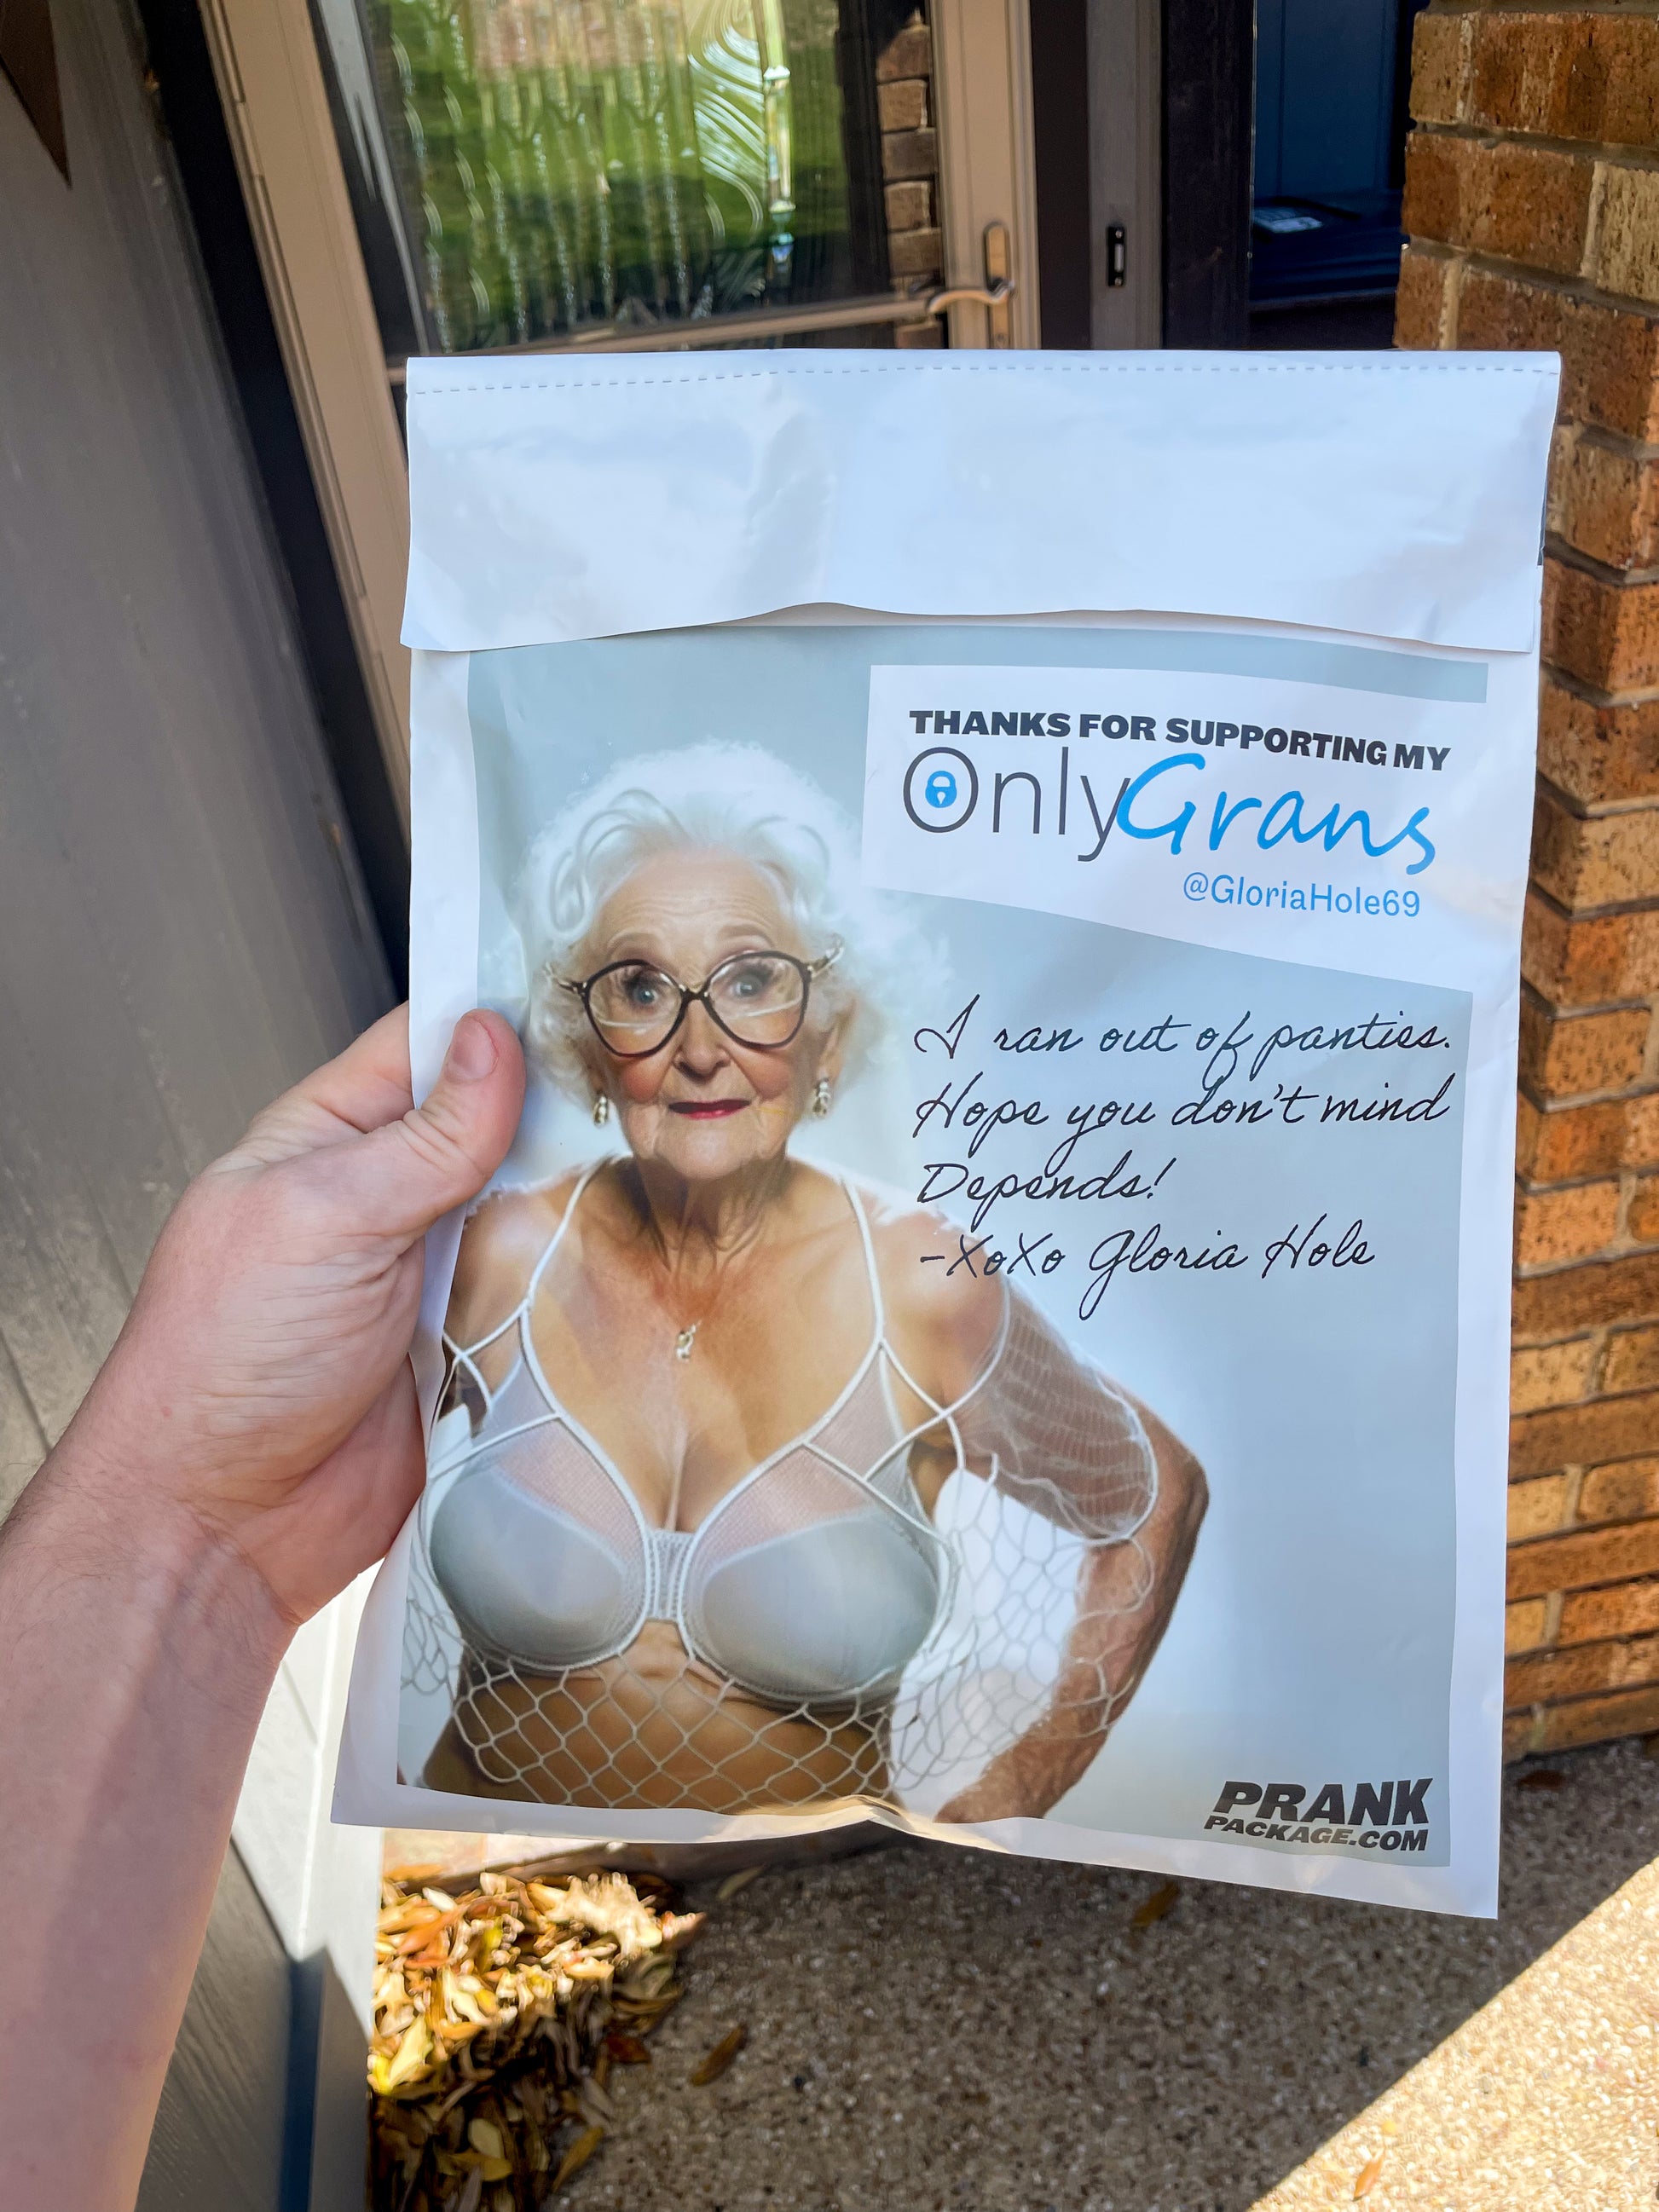 Send a Used Granny Panties Prank Package